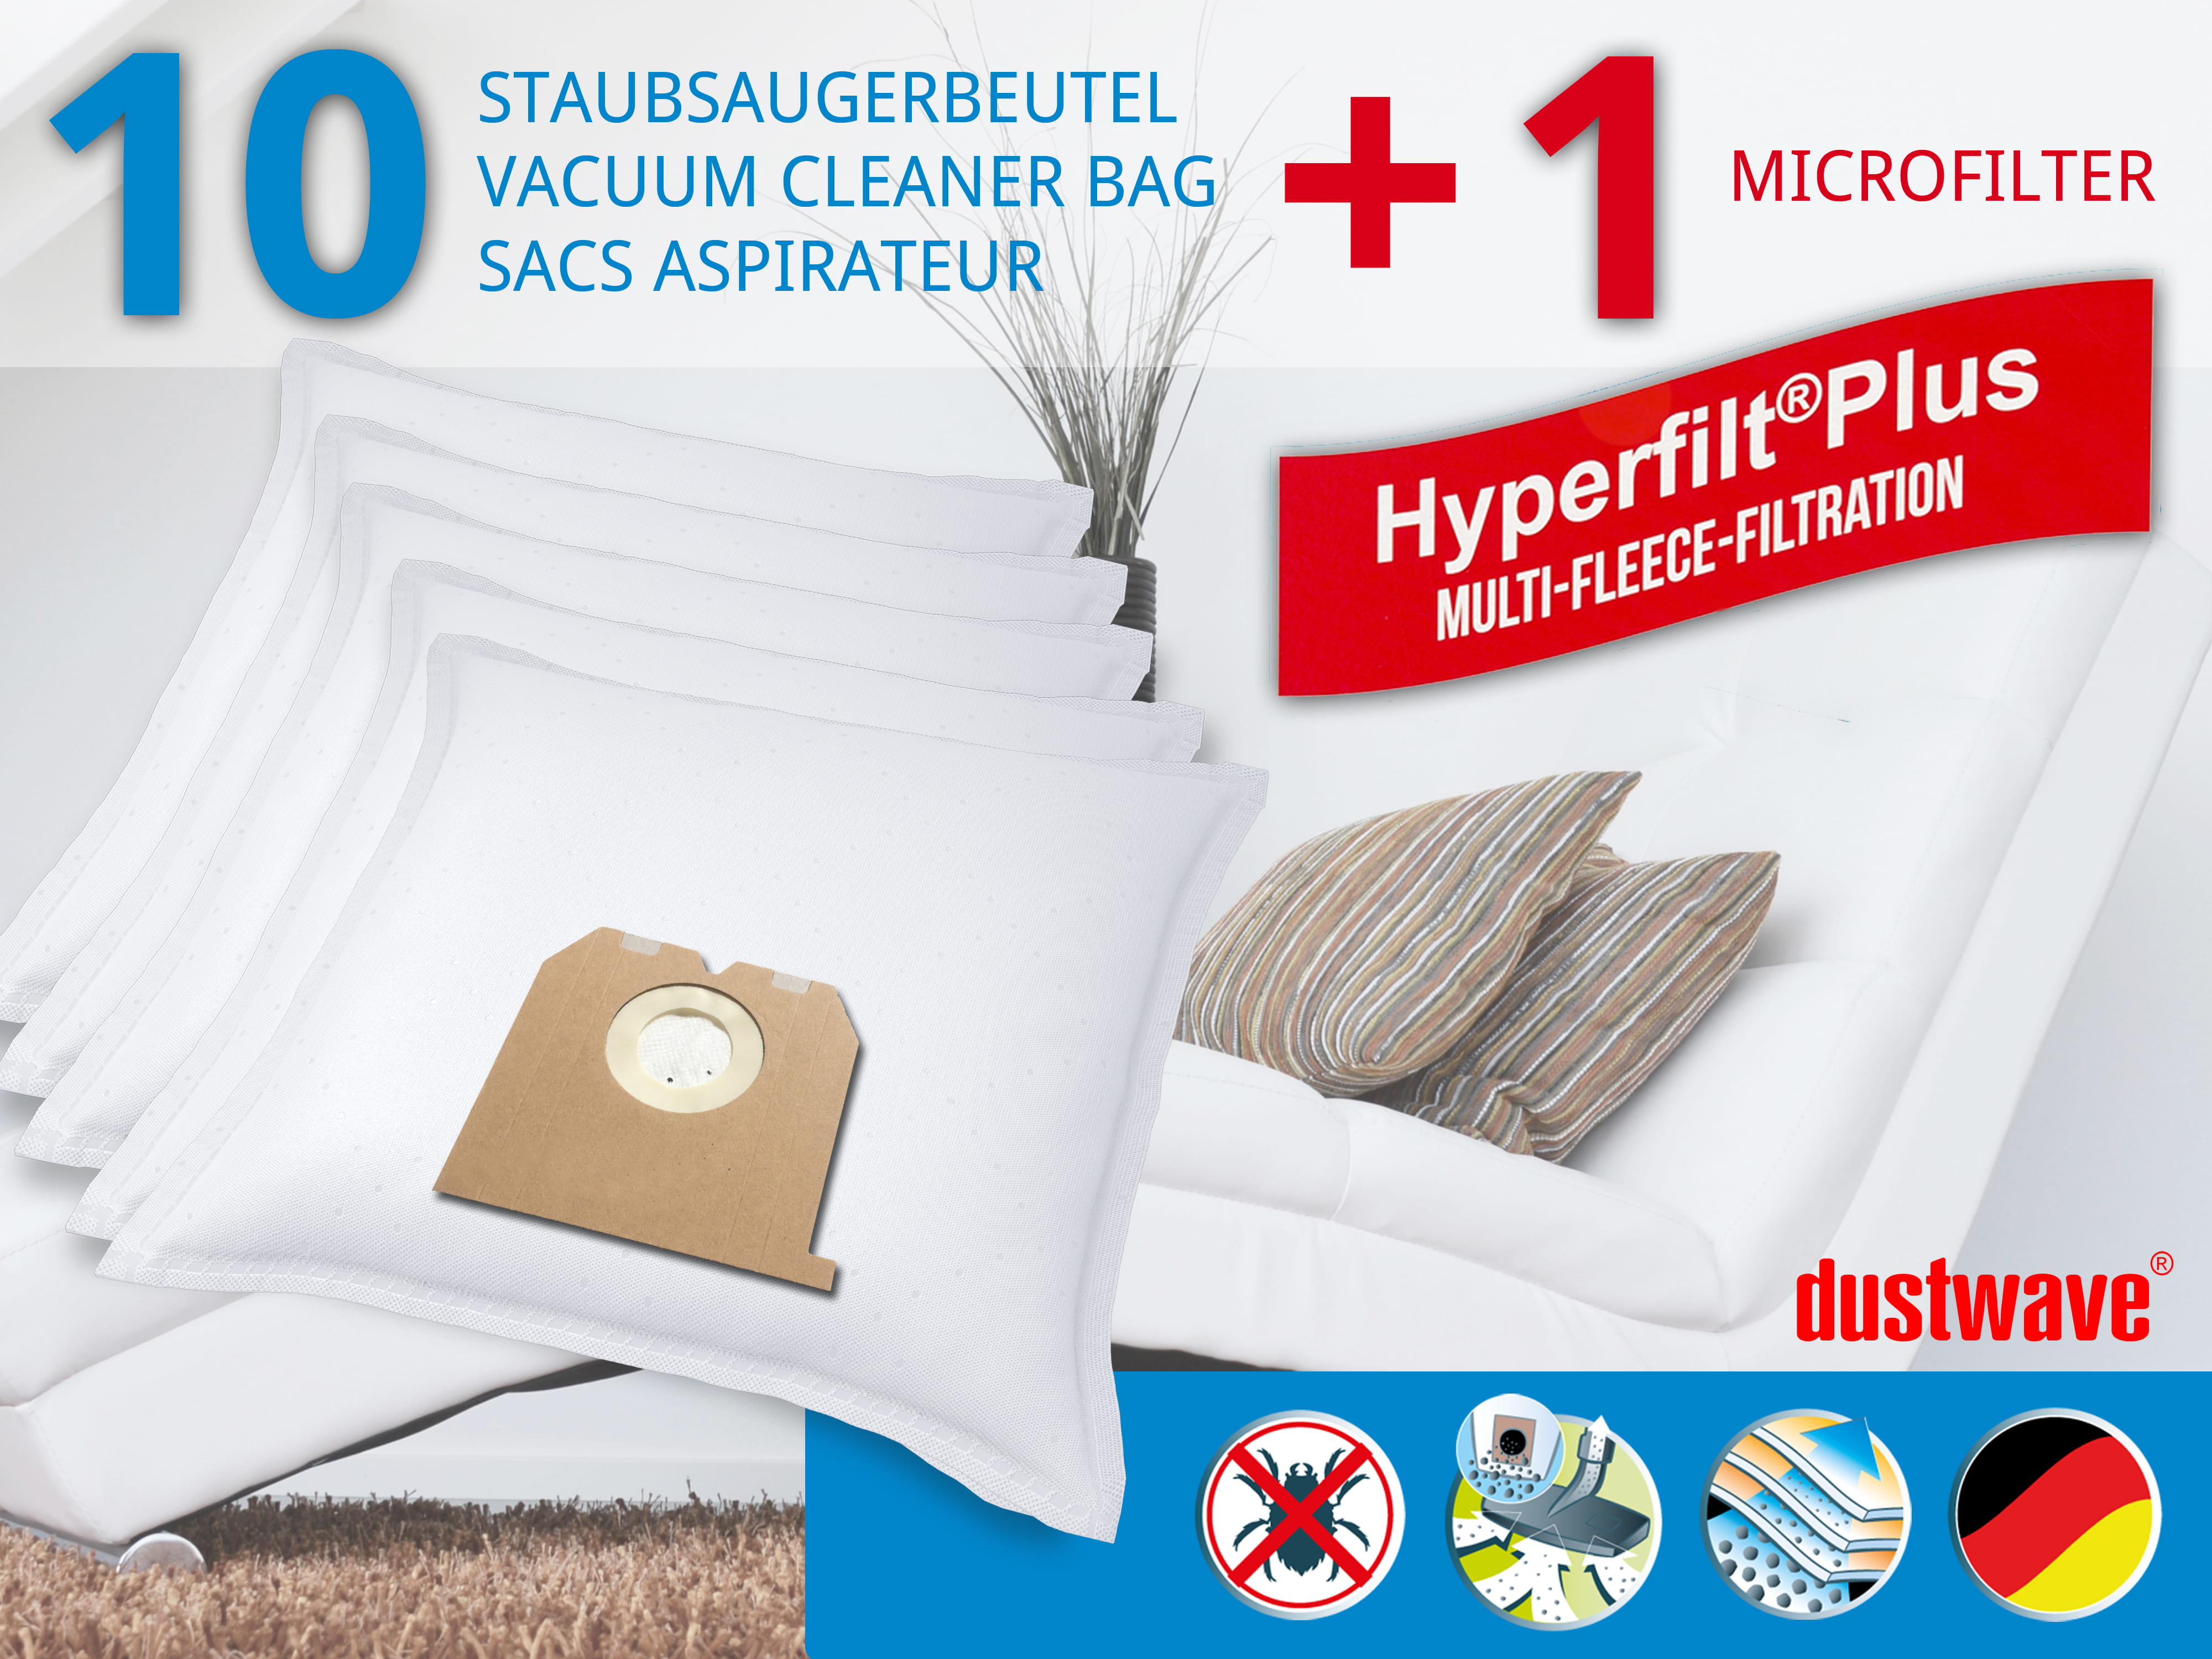 Dustwave® 10 Staubsaugerbeutel für Hoover PR 345 / PR345 - hocheffizient, mehrlagiges Mikrovlies mit Hygieneverschluss - Made in Germany